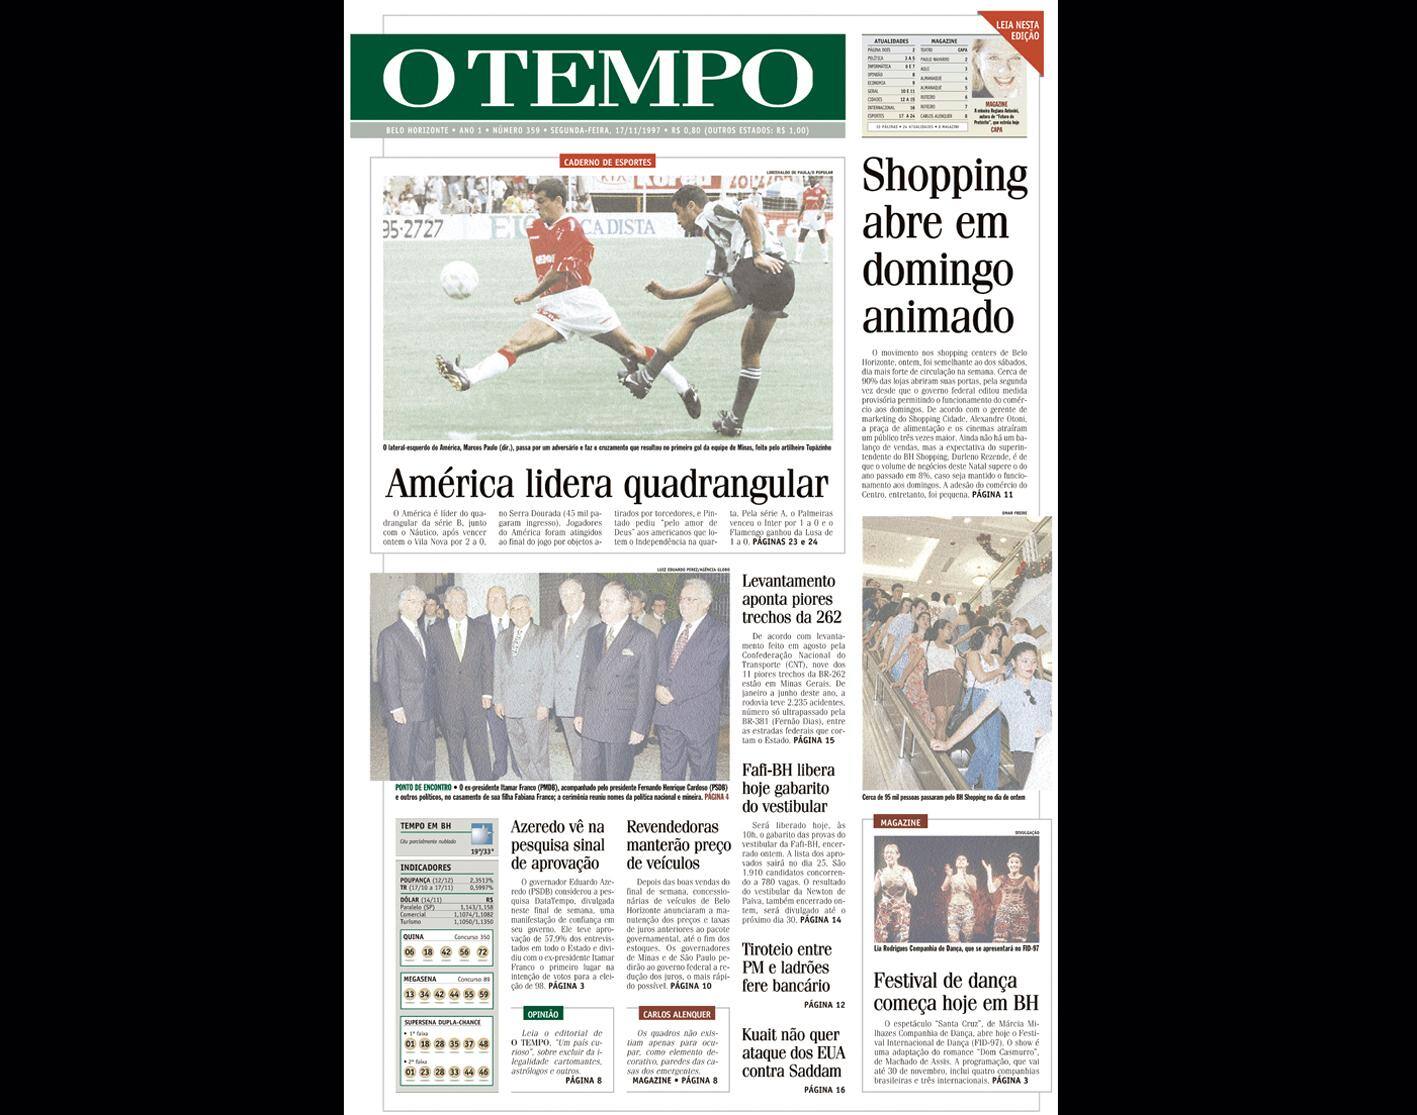 Capa do jornal O TEMPO no dia 17.11.1997; resgate do acervo marca as comemorações dos 25 anos da publicação